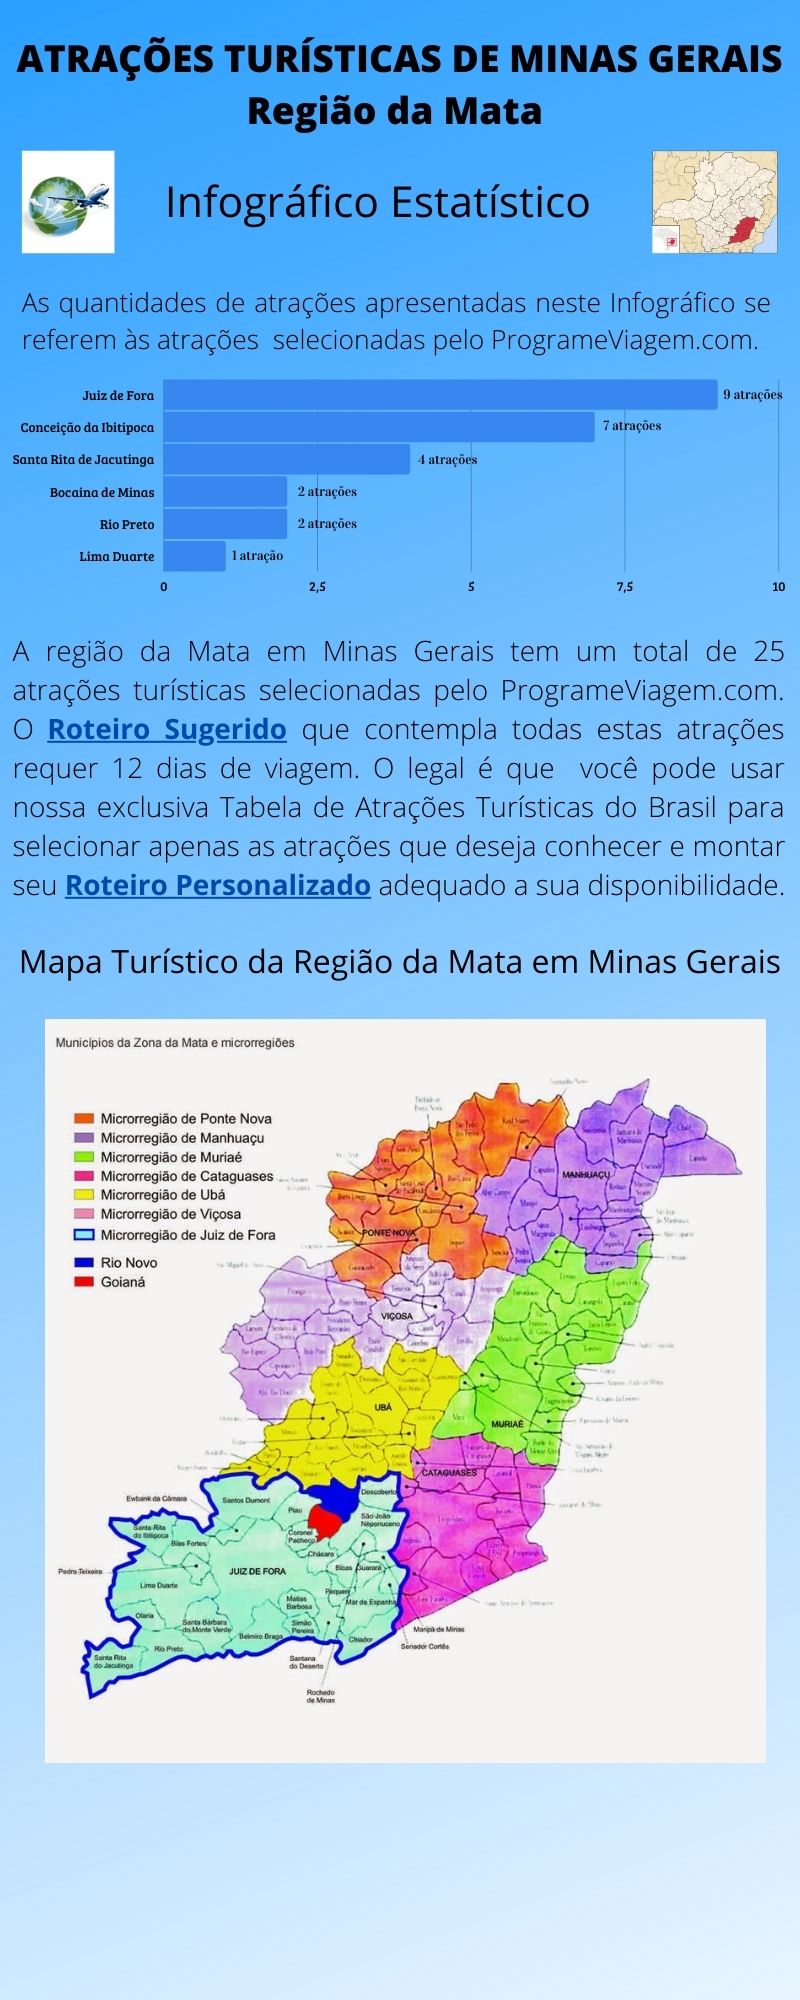 Infográfico Atrações Turísticas de Minas Gerais (Mata)